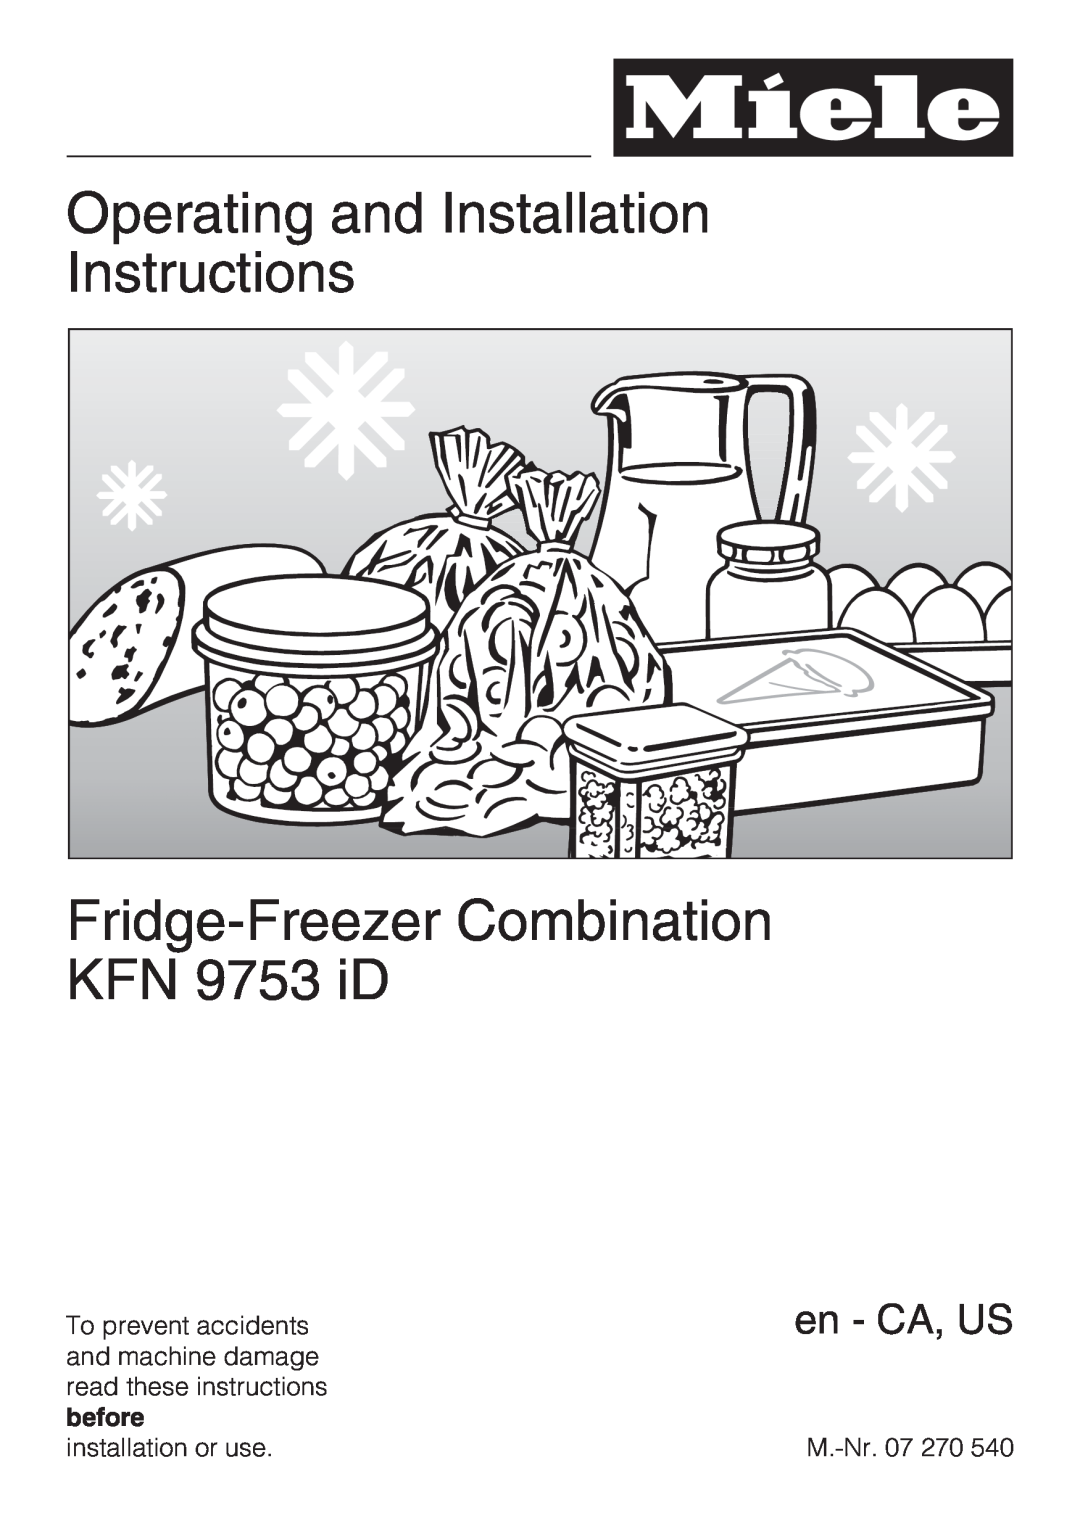 Miele KFN 9753 ID installation instructions Operating and Installation Instructions, Fridge-FreezerCombination KFN 9753 iD 